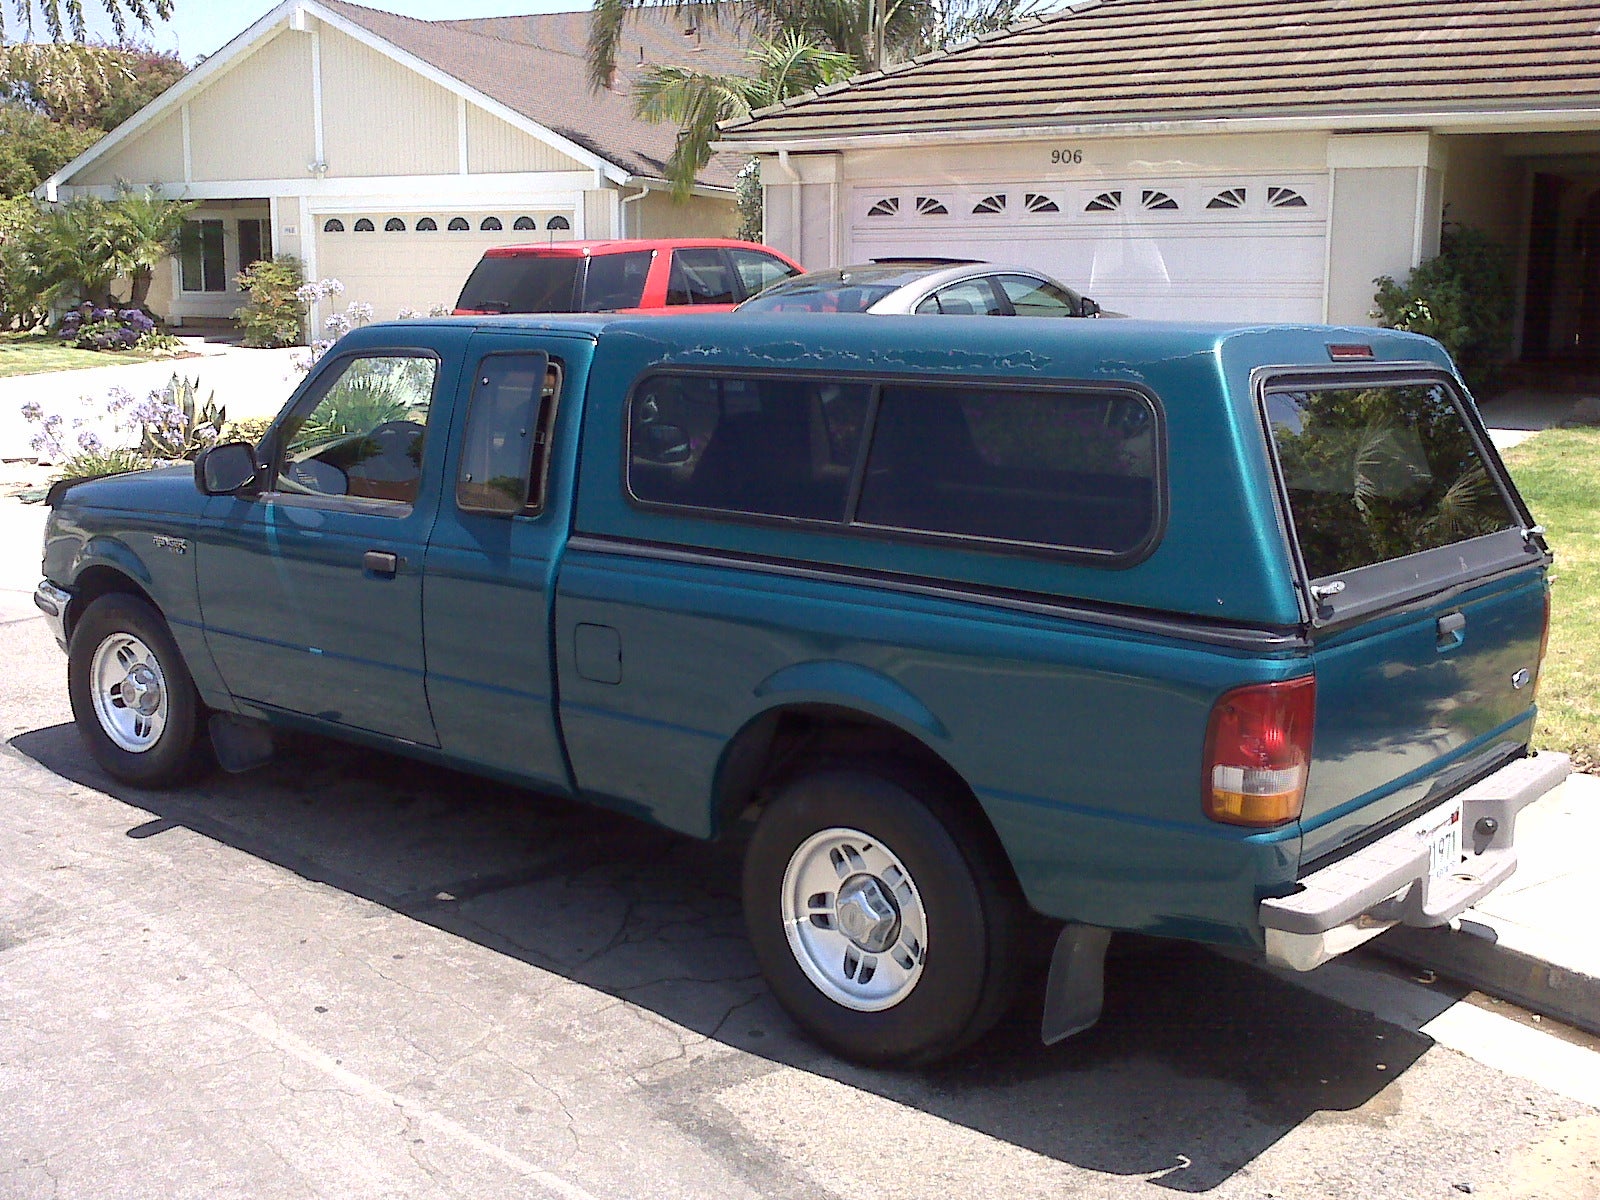 1995 Ford ranger extended cab wheelbase